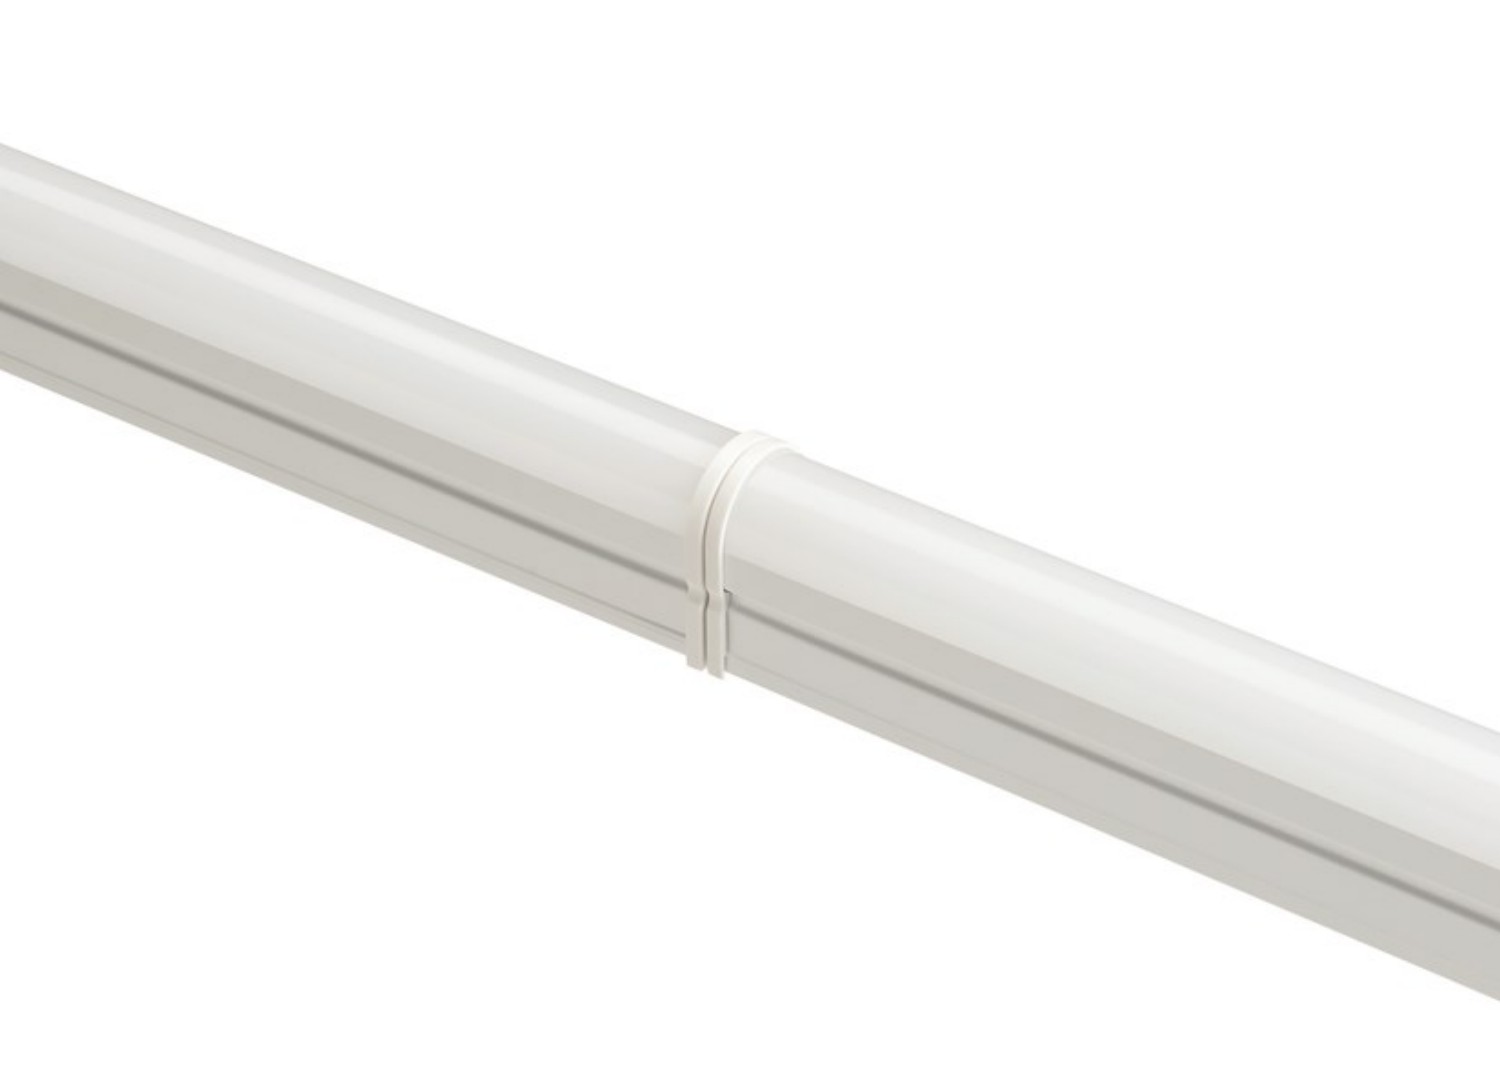 Sylvania LED Lichtleiste Pipe 7 Watt 840 neutralweiß 600mm mit Anschlußleitung und Befestigungsclips starr und beweglich 